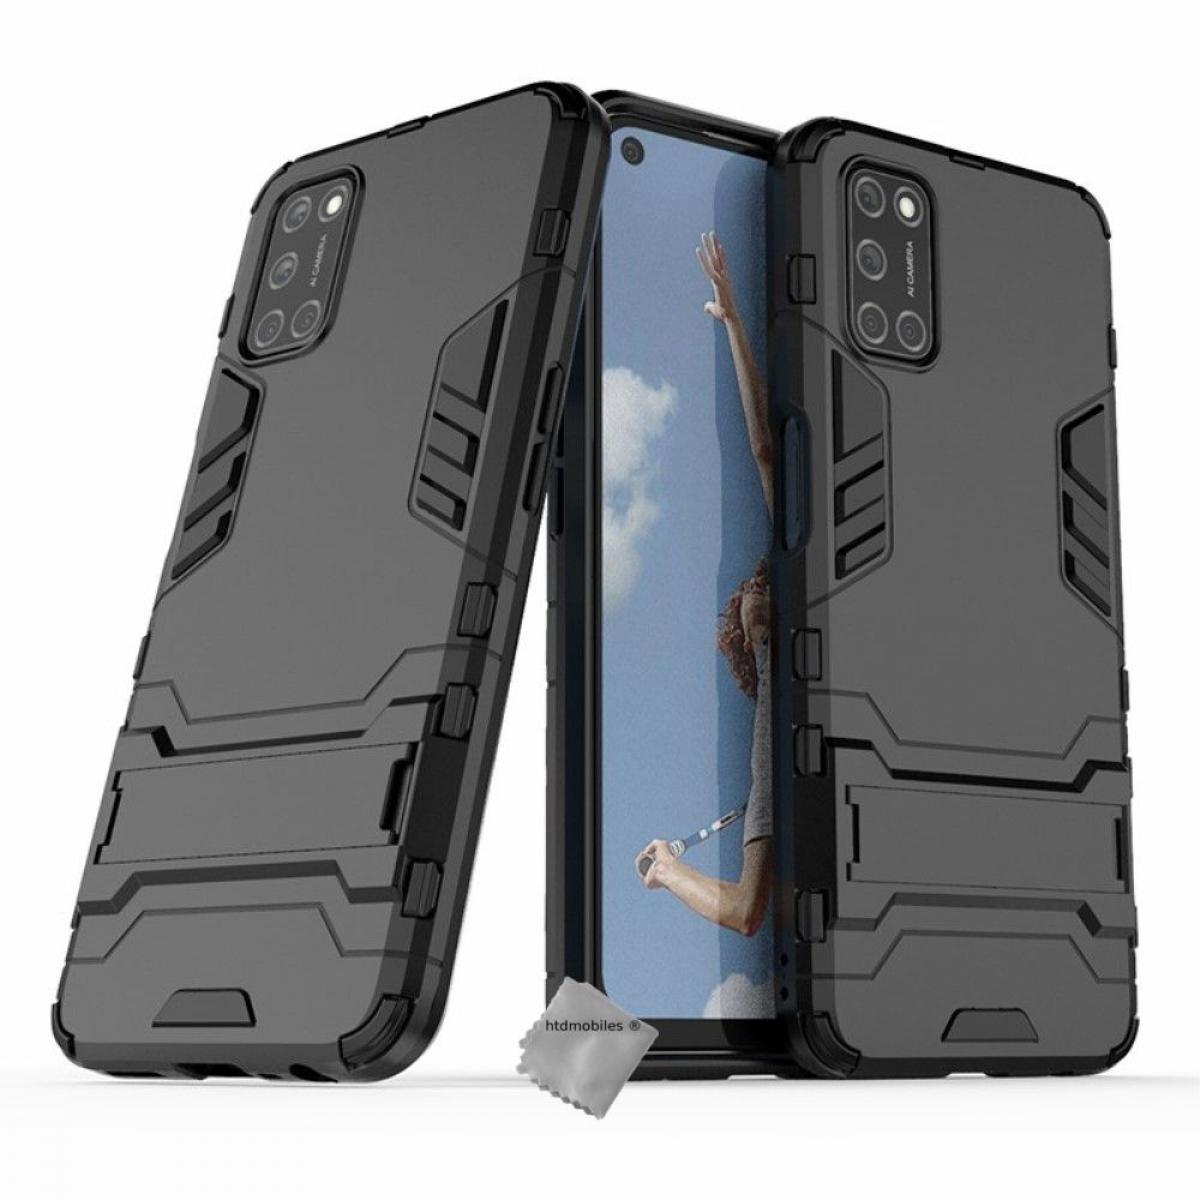 Htdmobiles - Housse etui coque rigide anti choc pour Oppo A72 + verre trempe - NOIR - Autres accessoires smartphone